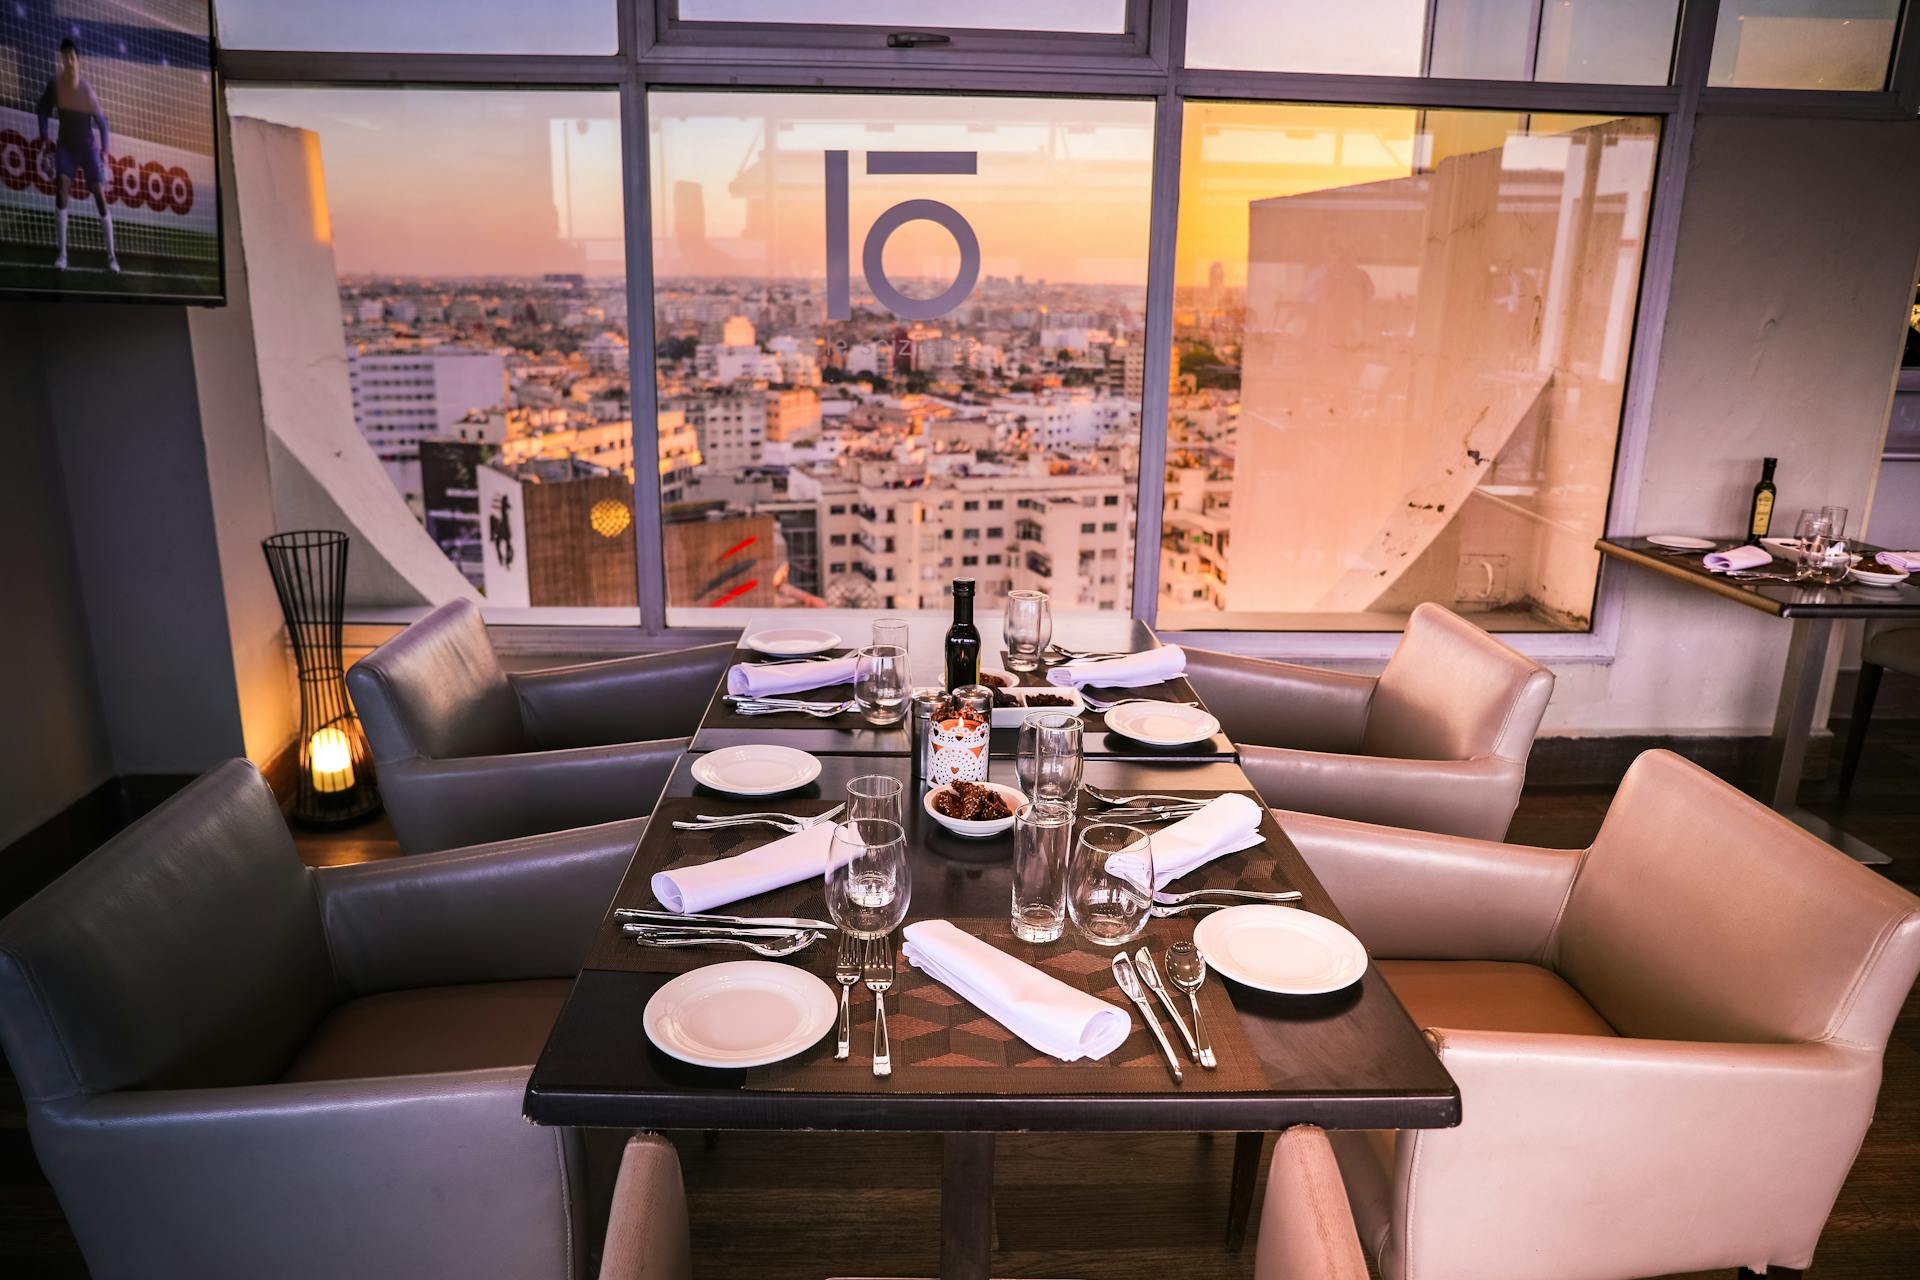 Table dans un restaurant | Source : Pexels